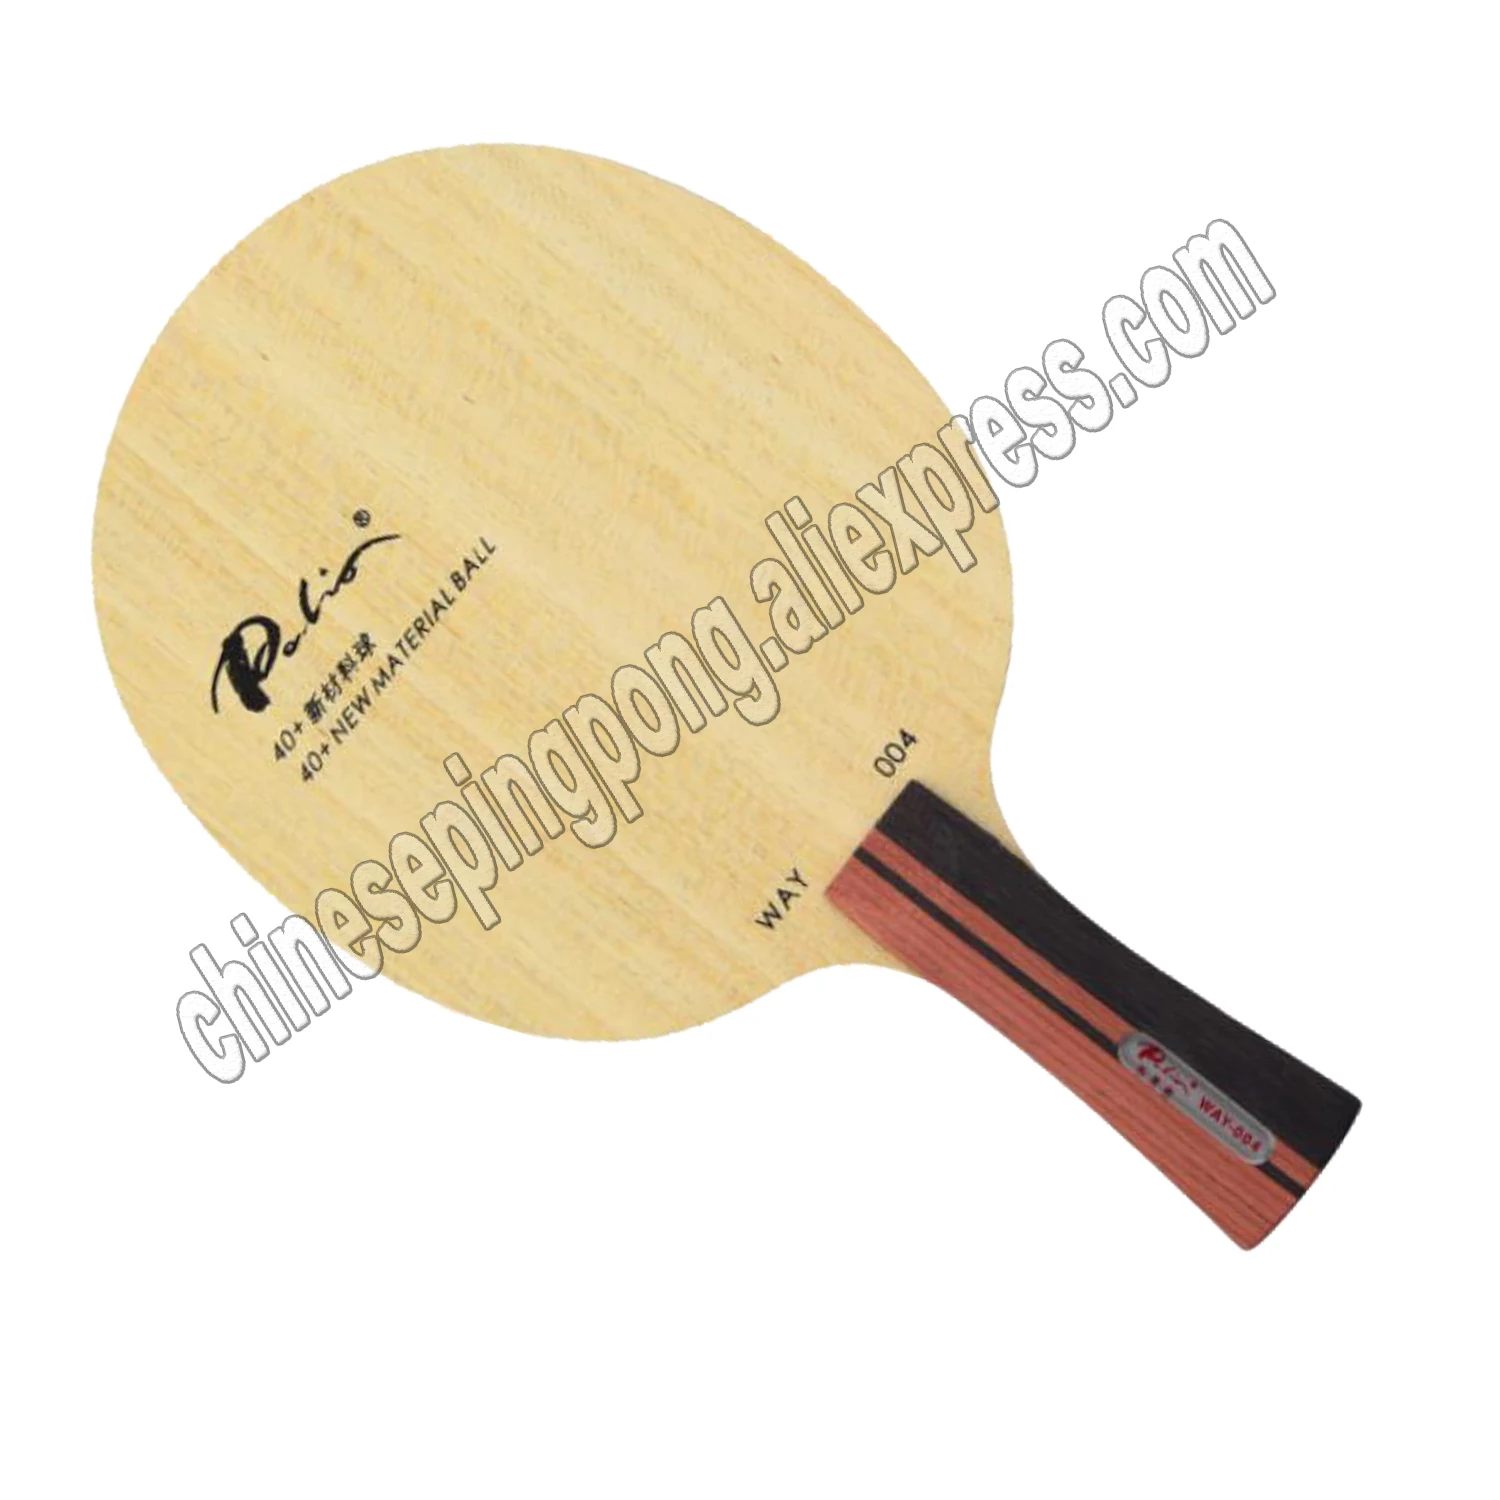 

Ракетка Palio way004 way 004 для настольного тенниса, ракетка из чистого дерева для 40 + ракеток из нового материала для настольного тенниса, Спортивная ракетка